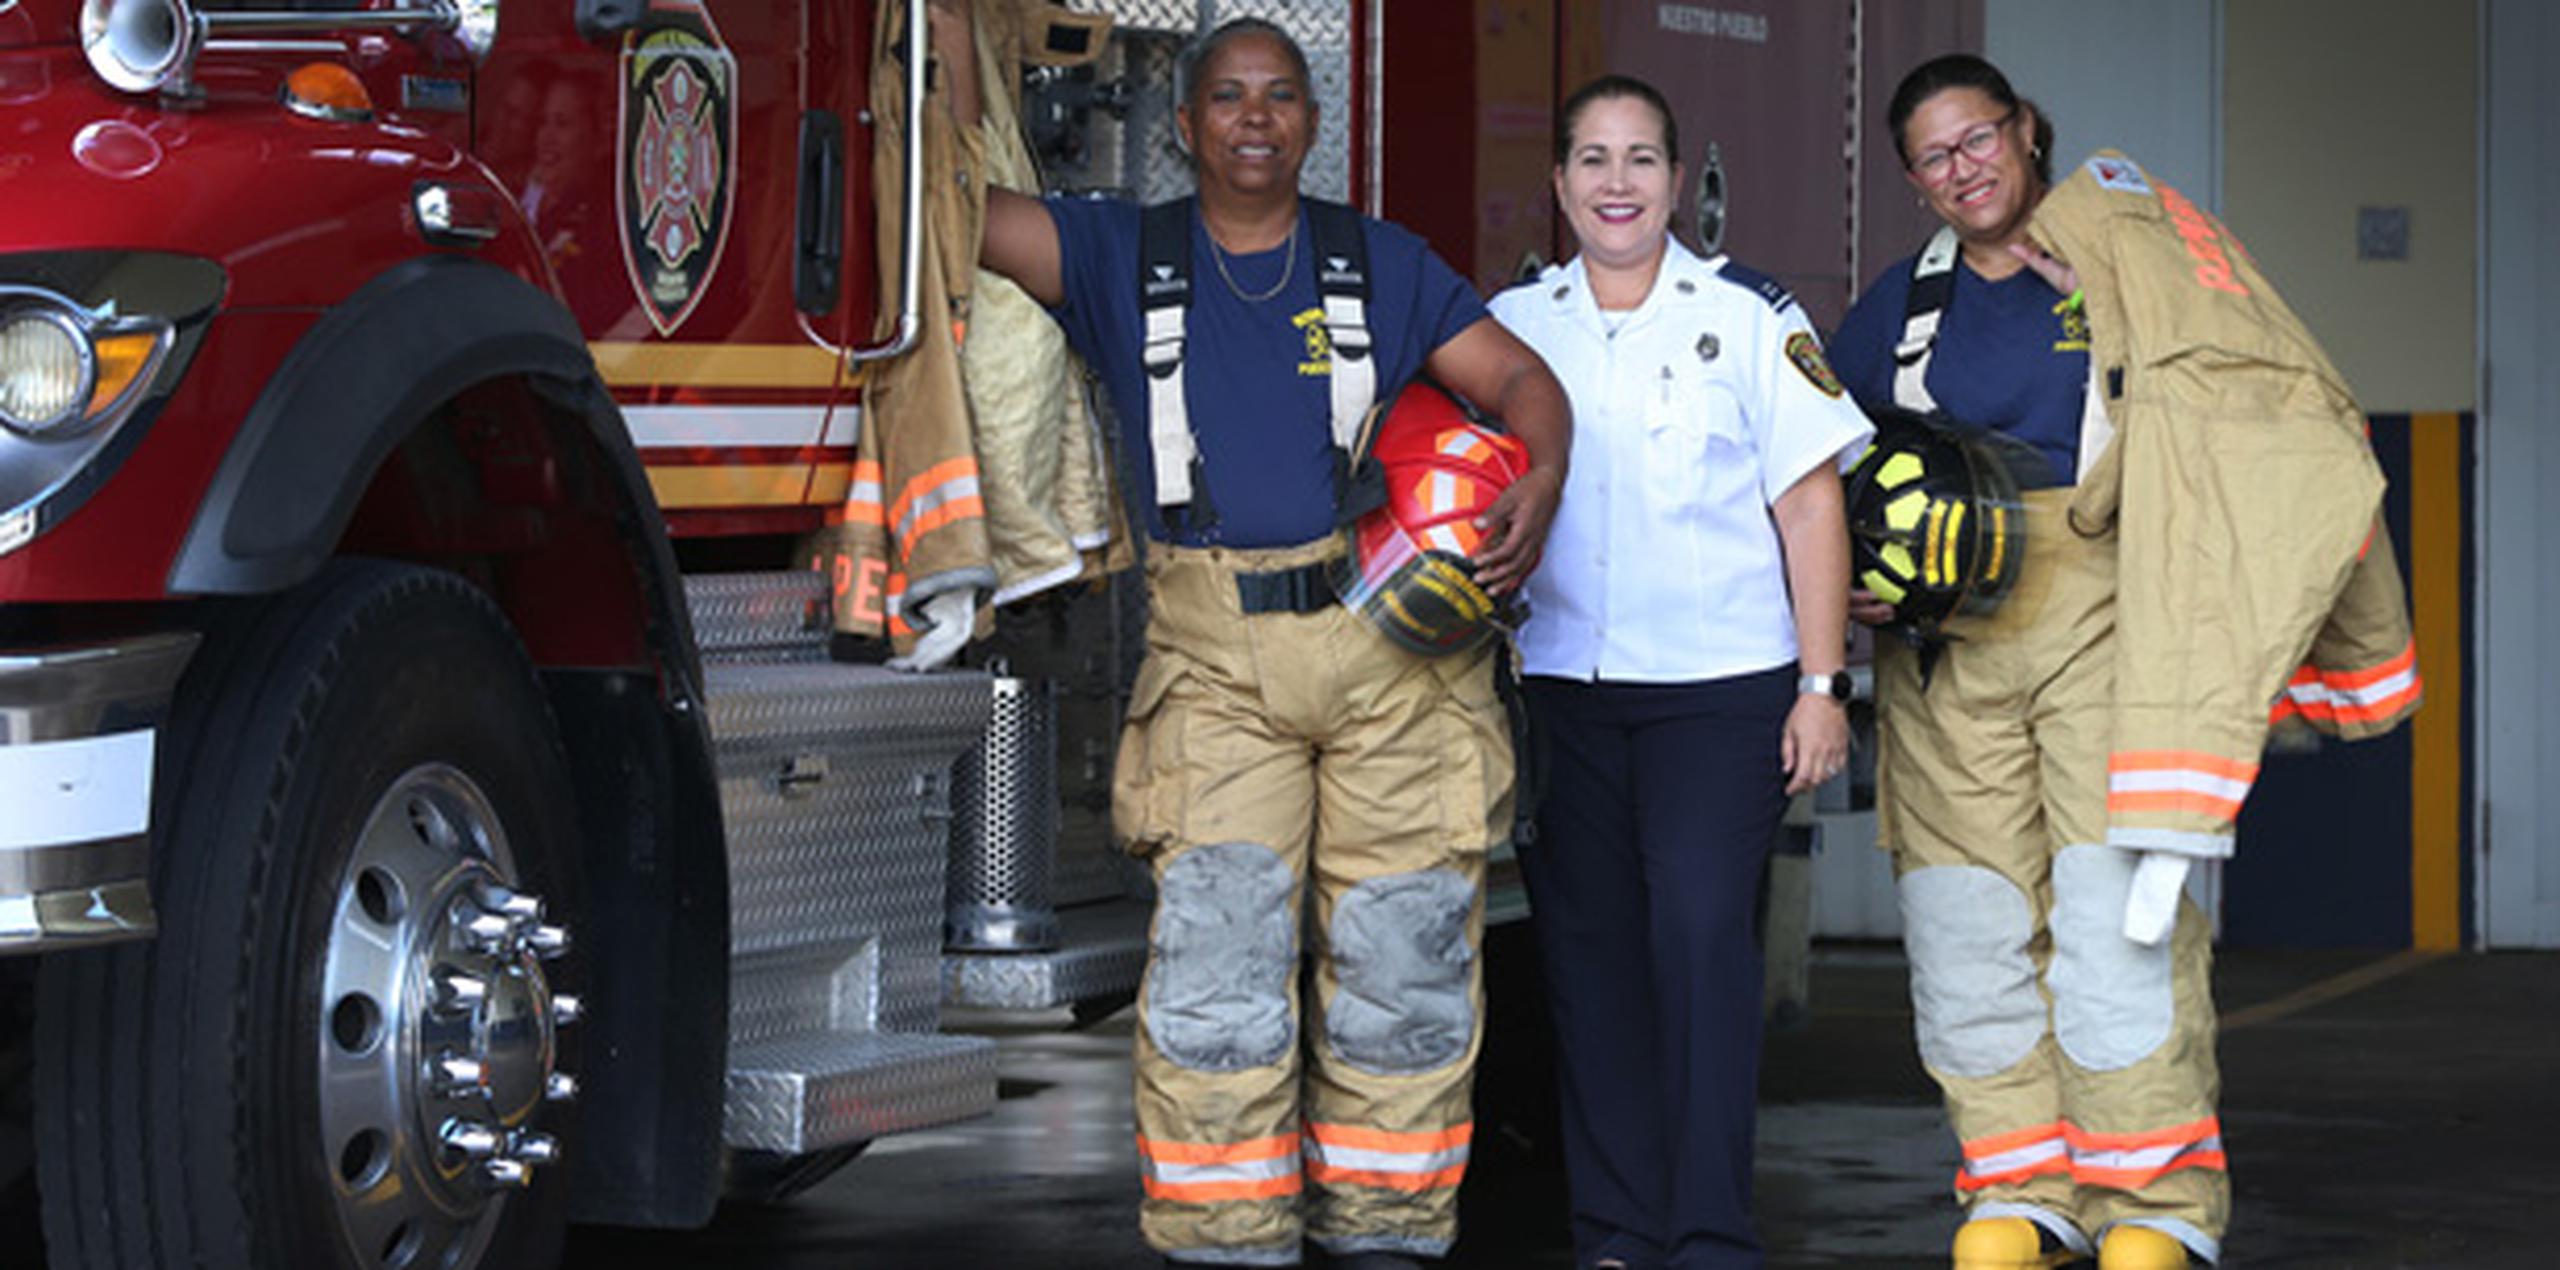 En la foto, desde la izquierda, la bombera María de los Ángeles López, la inspectora Brenda Rodríguez y la bombera Marta Marín.  (juan.martinez@gfrmedia.com)